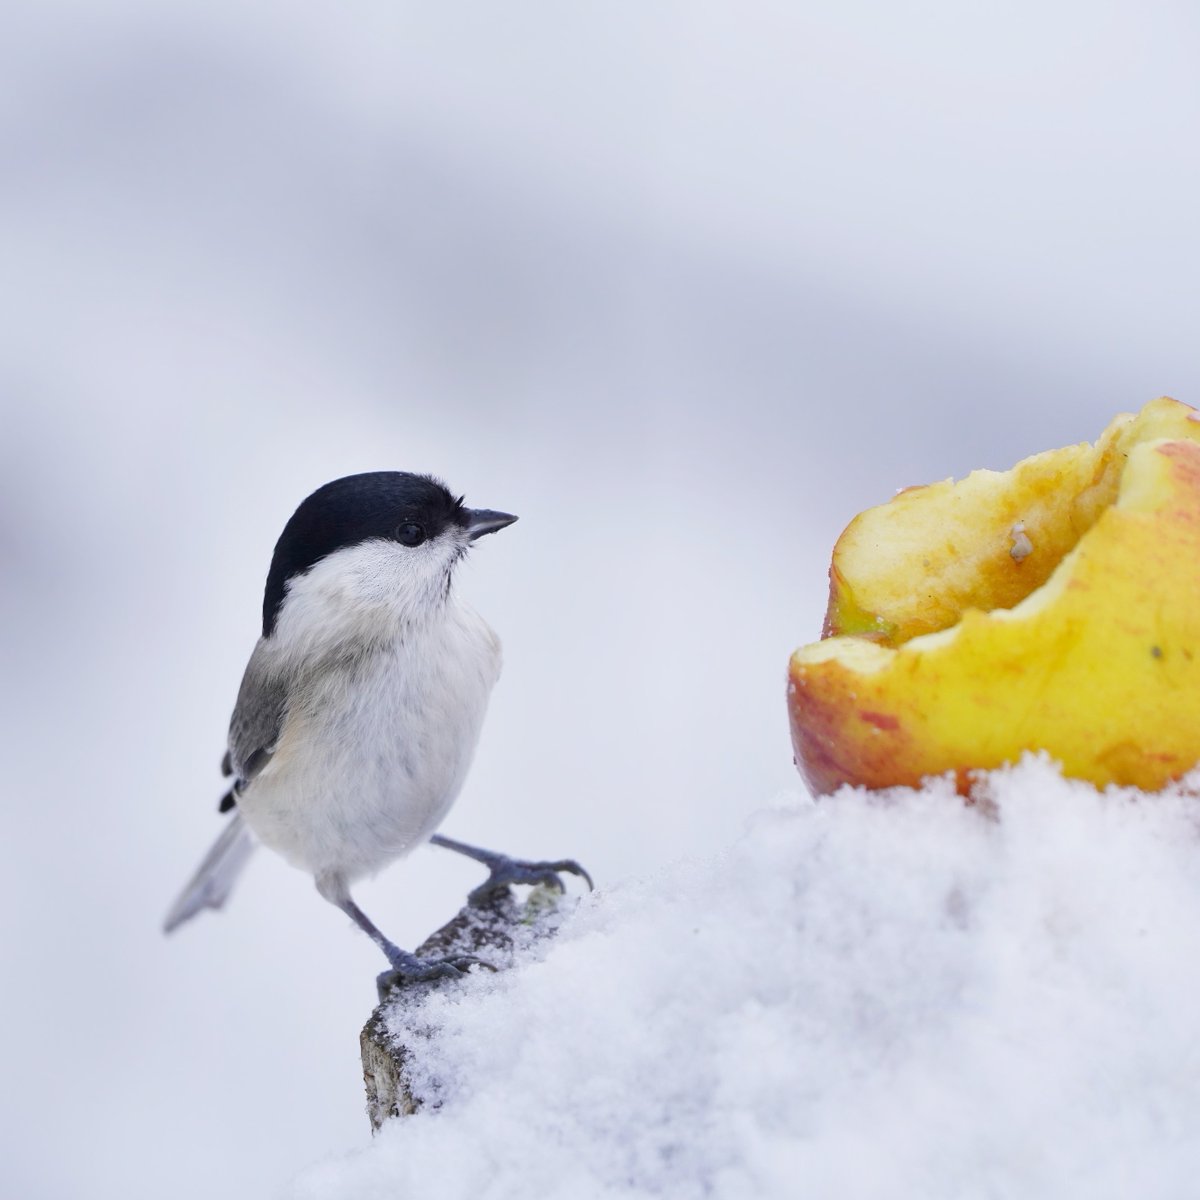 Misschien voer je de vogels nu de nachten kouder worden? Fijn! Hier wat tips om ze gezónd te voeren: vogelbescherming.nl/actueel/berich… 😊🙏